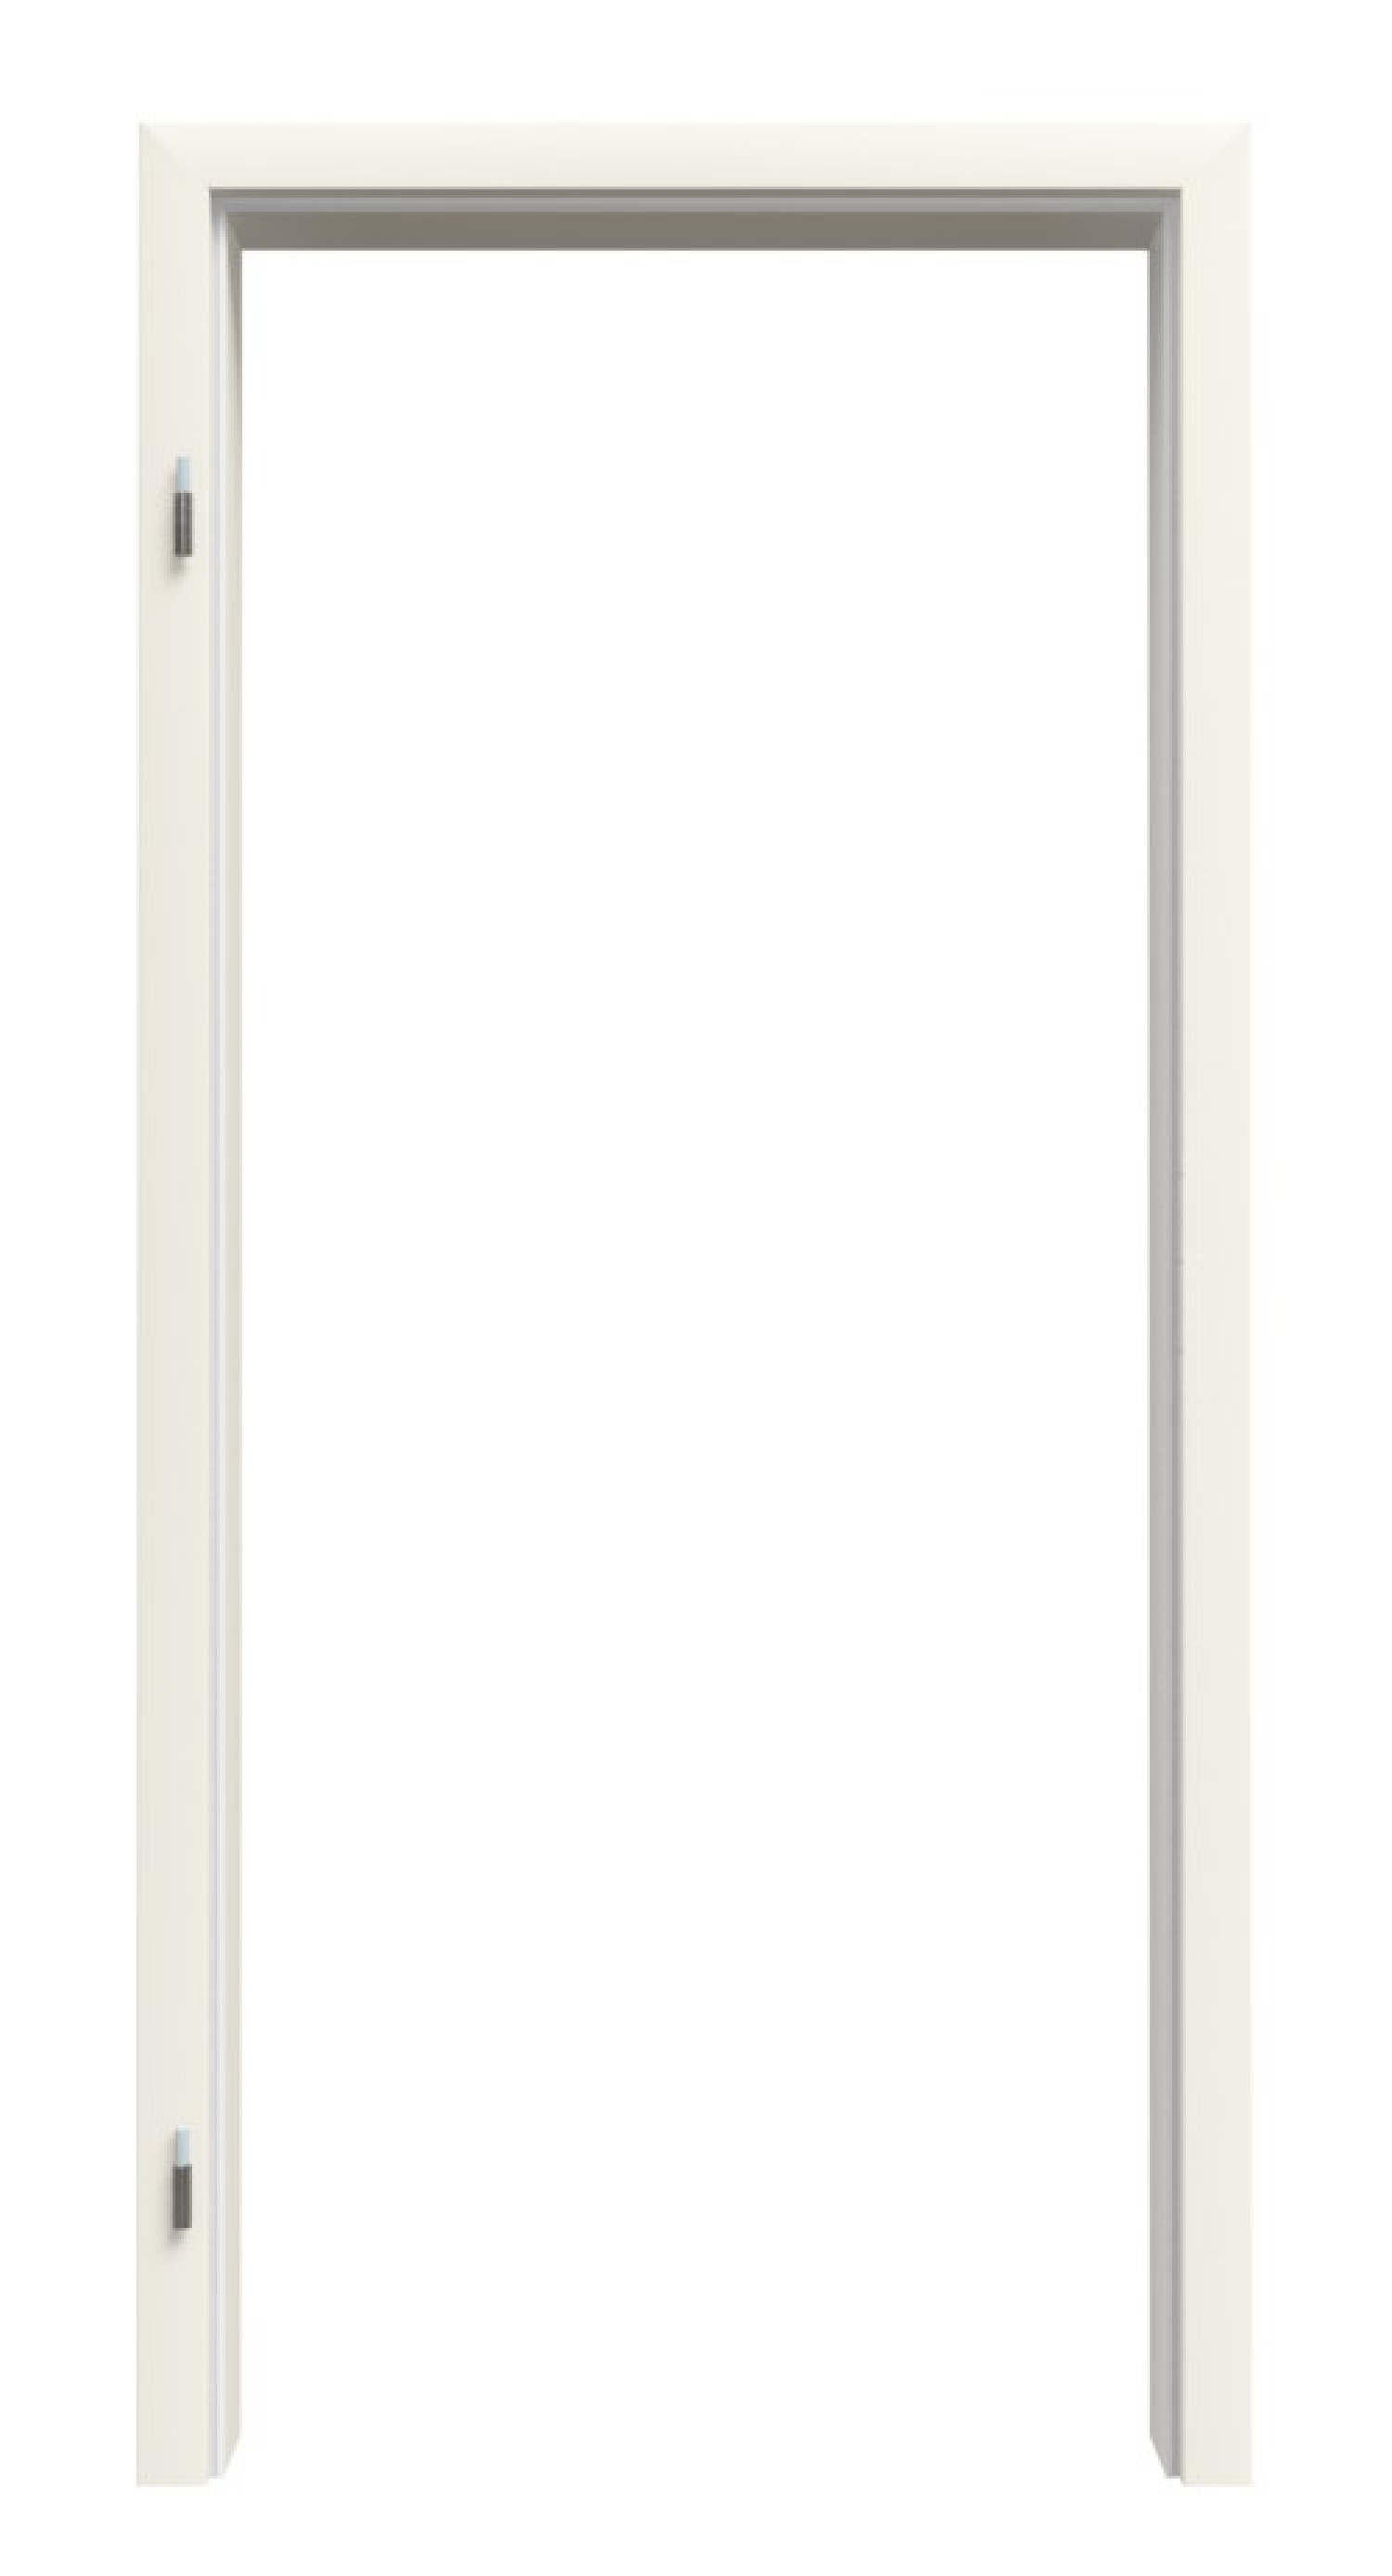 Zarge für Wohnungseingangstüren Glatt Premium Weißlack RAL 9010 ZA-09 mit Rundkante